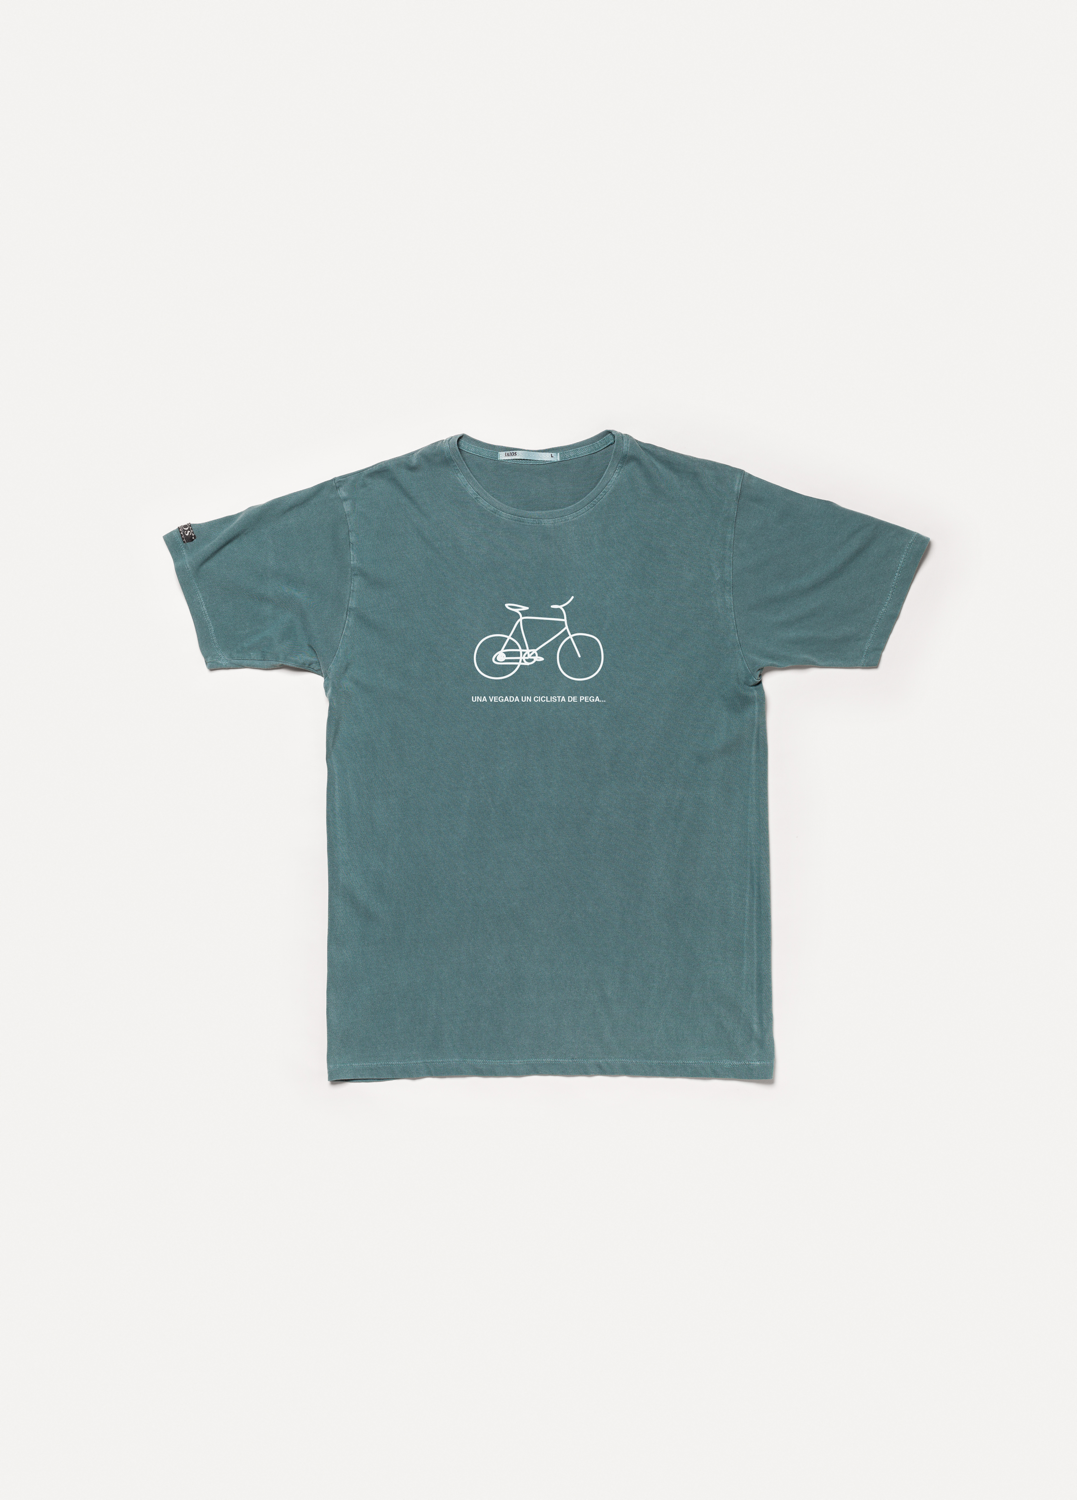 Camiseta Ciclista de pega